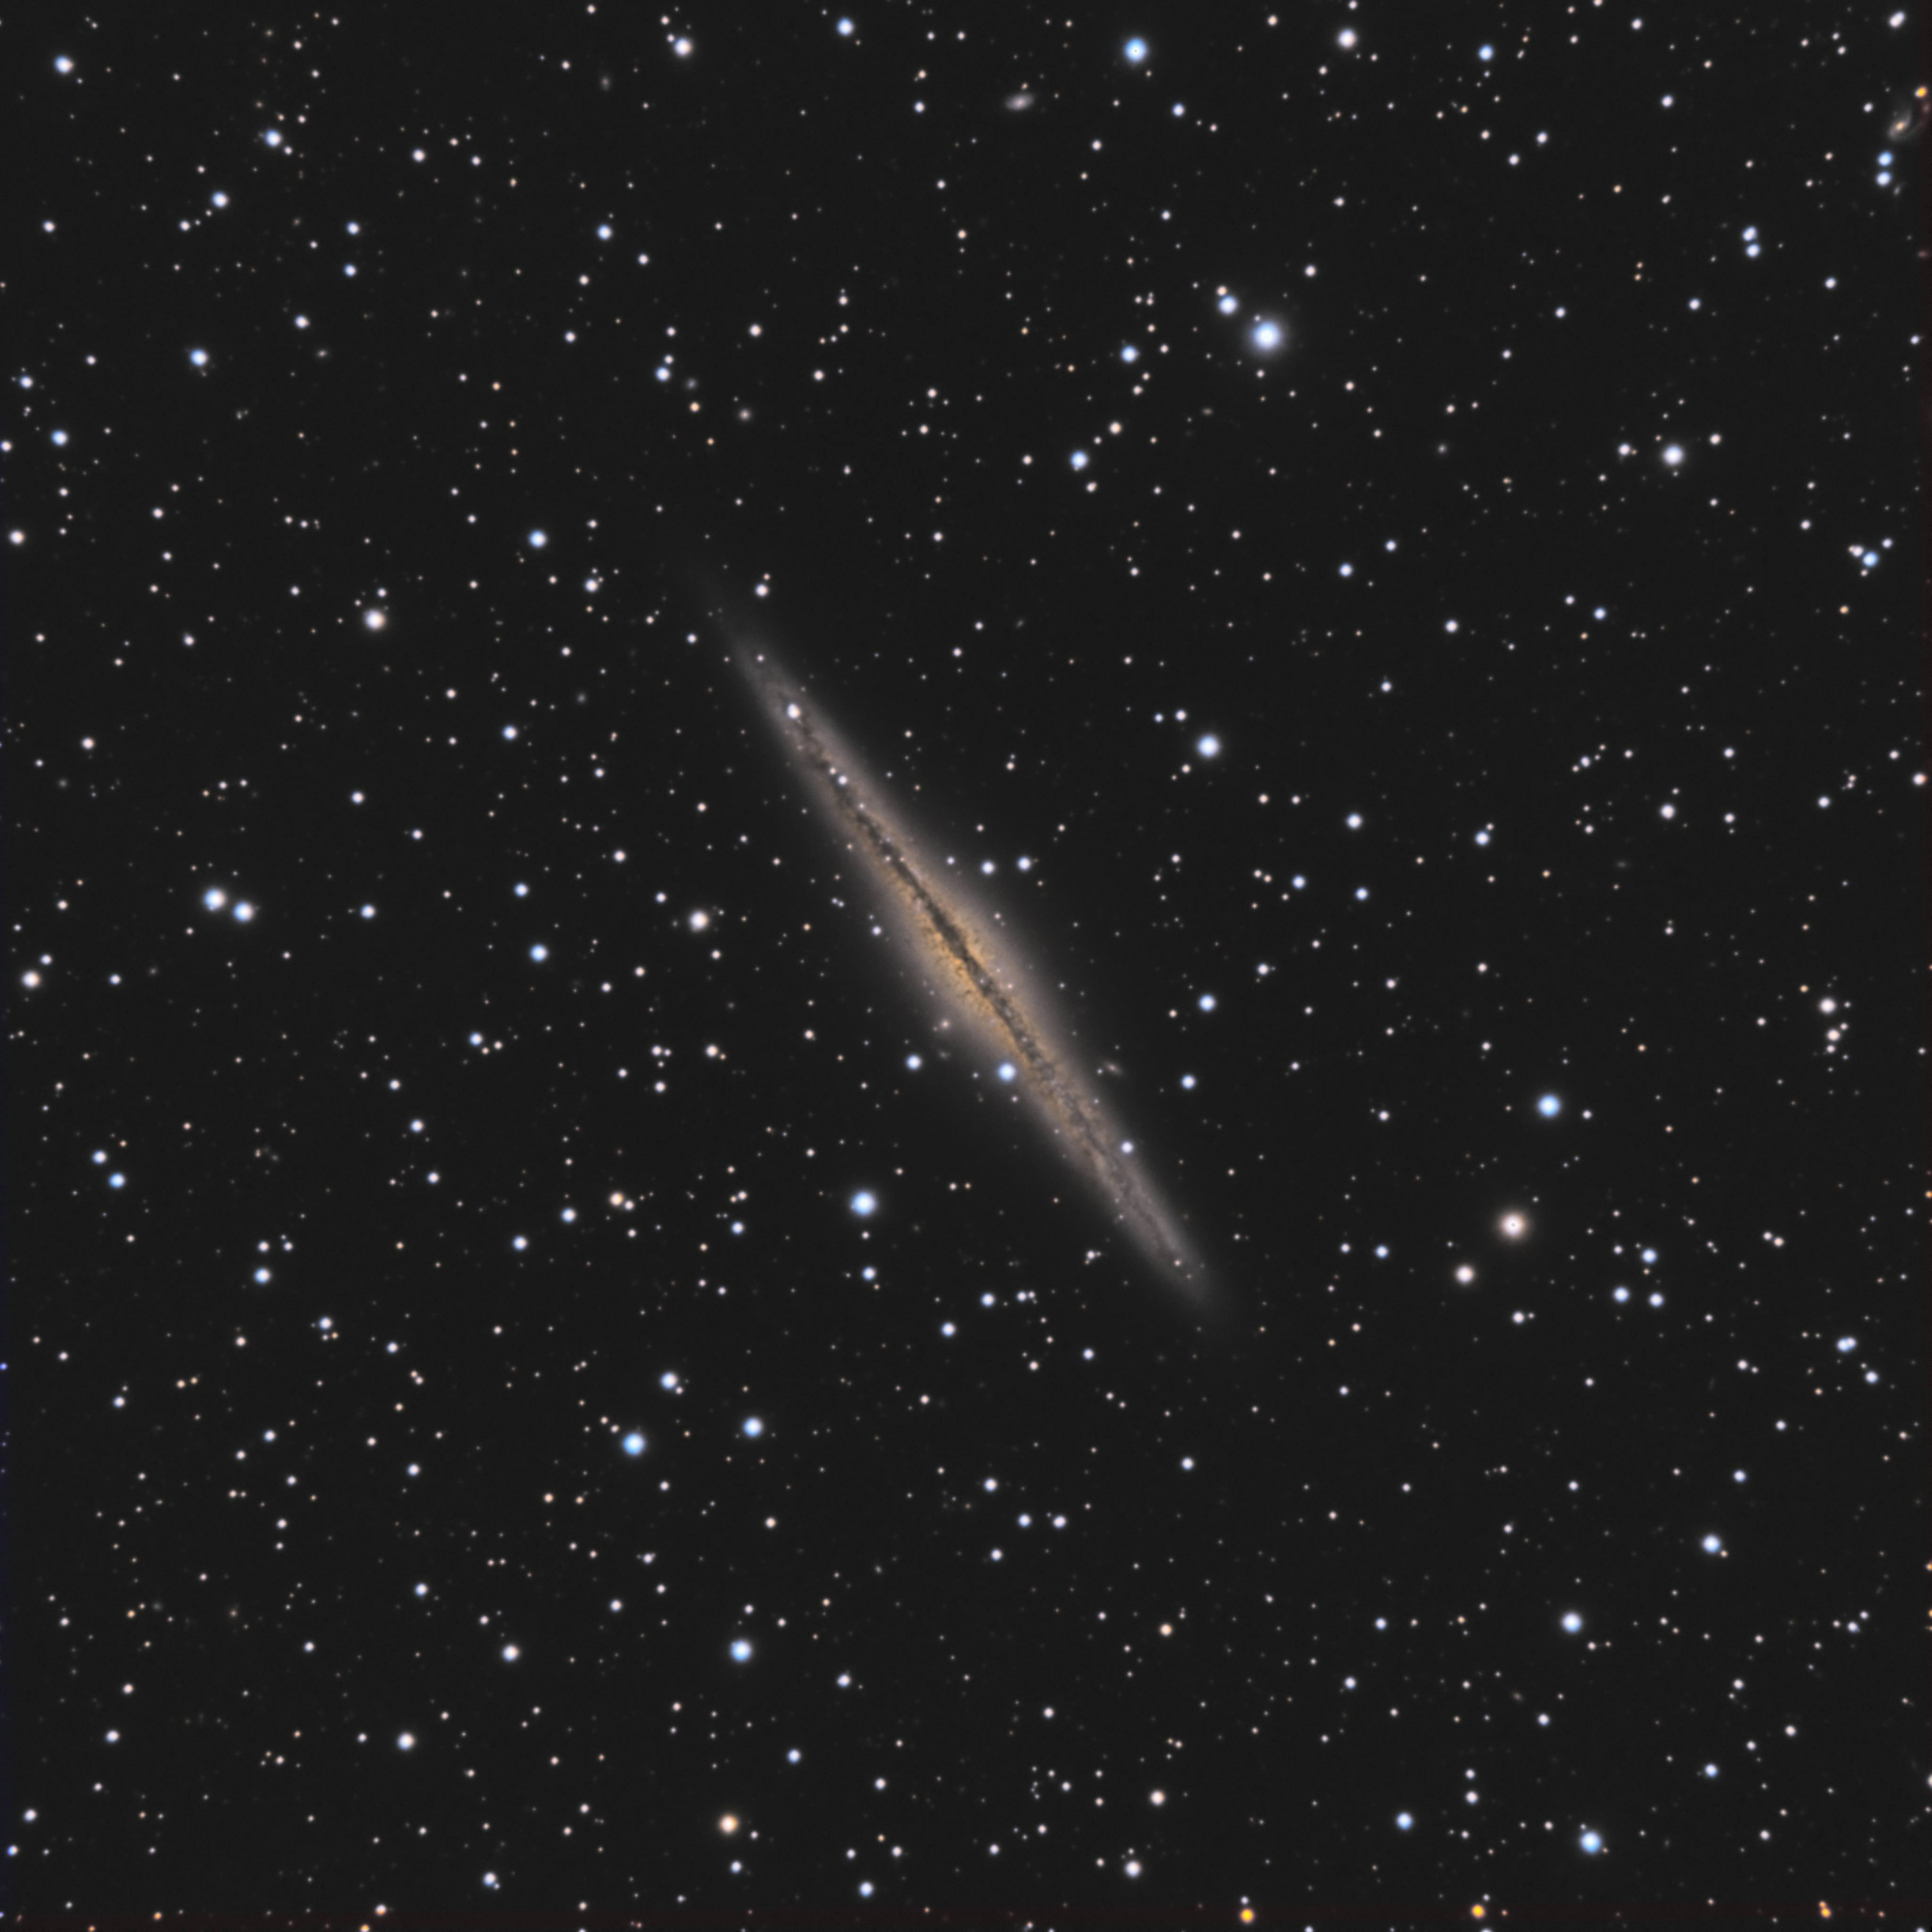 5c2a0a1f48dd7_NGC891.thumb.jpg.d0bf098dc84c72c7150c8c05f11c8480.jpg